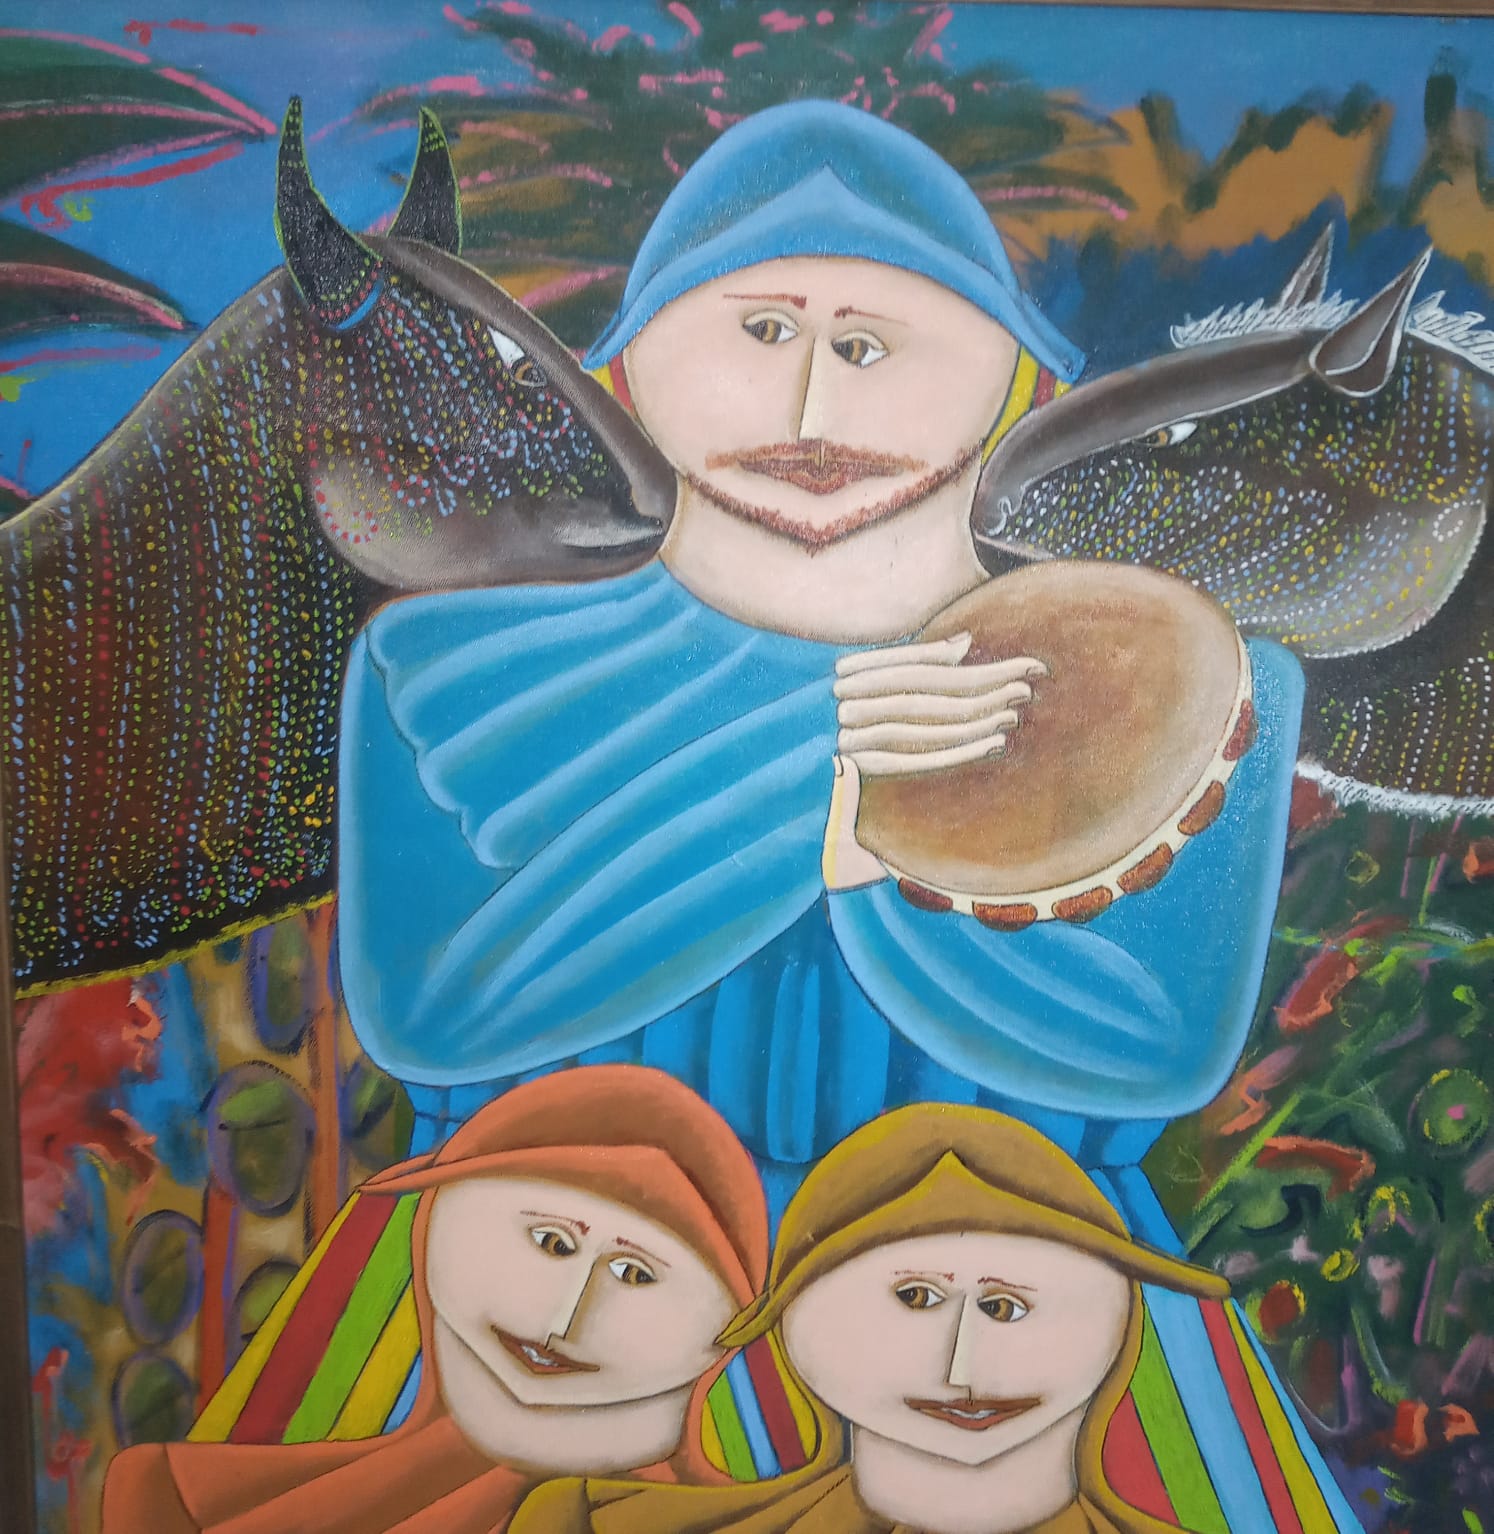 Uma das telas da exposição "Maranhão Meu Maranhão", de Fransoufer. Reprodução